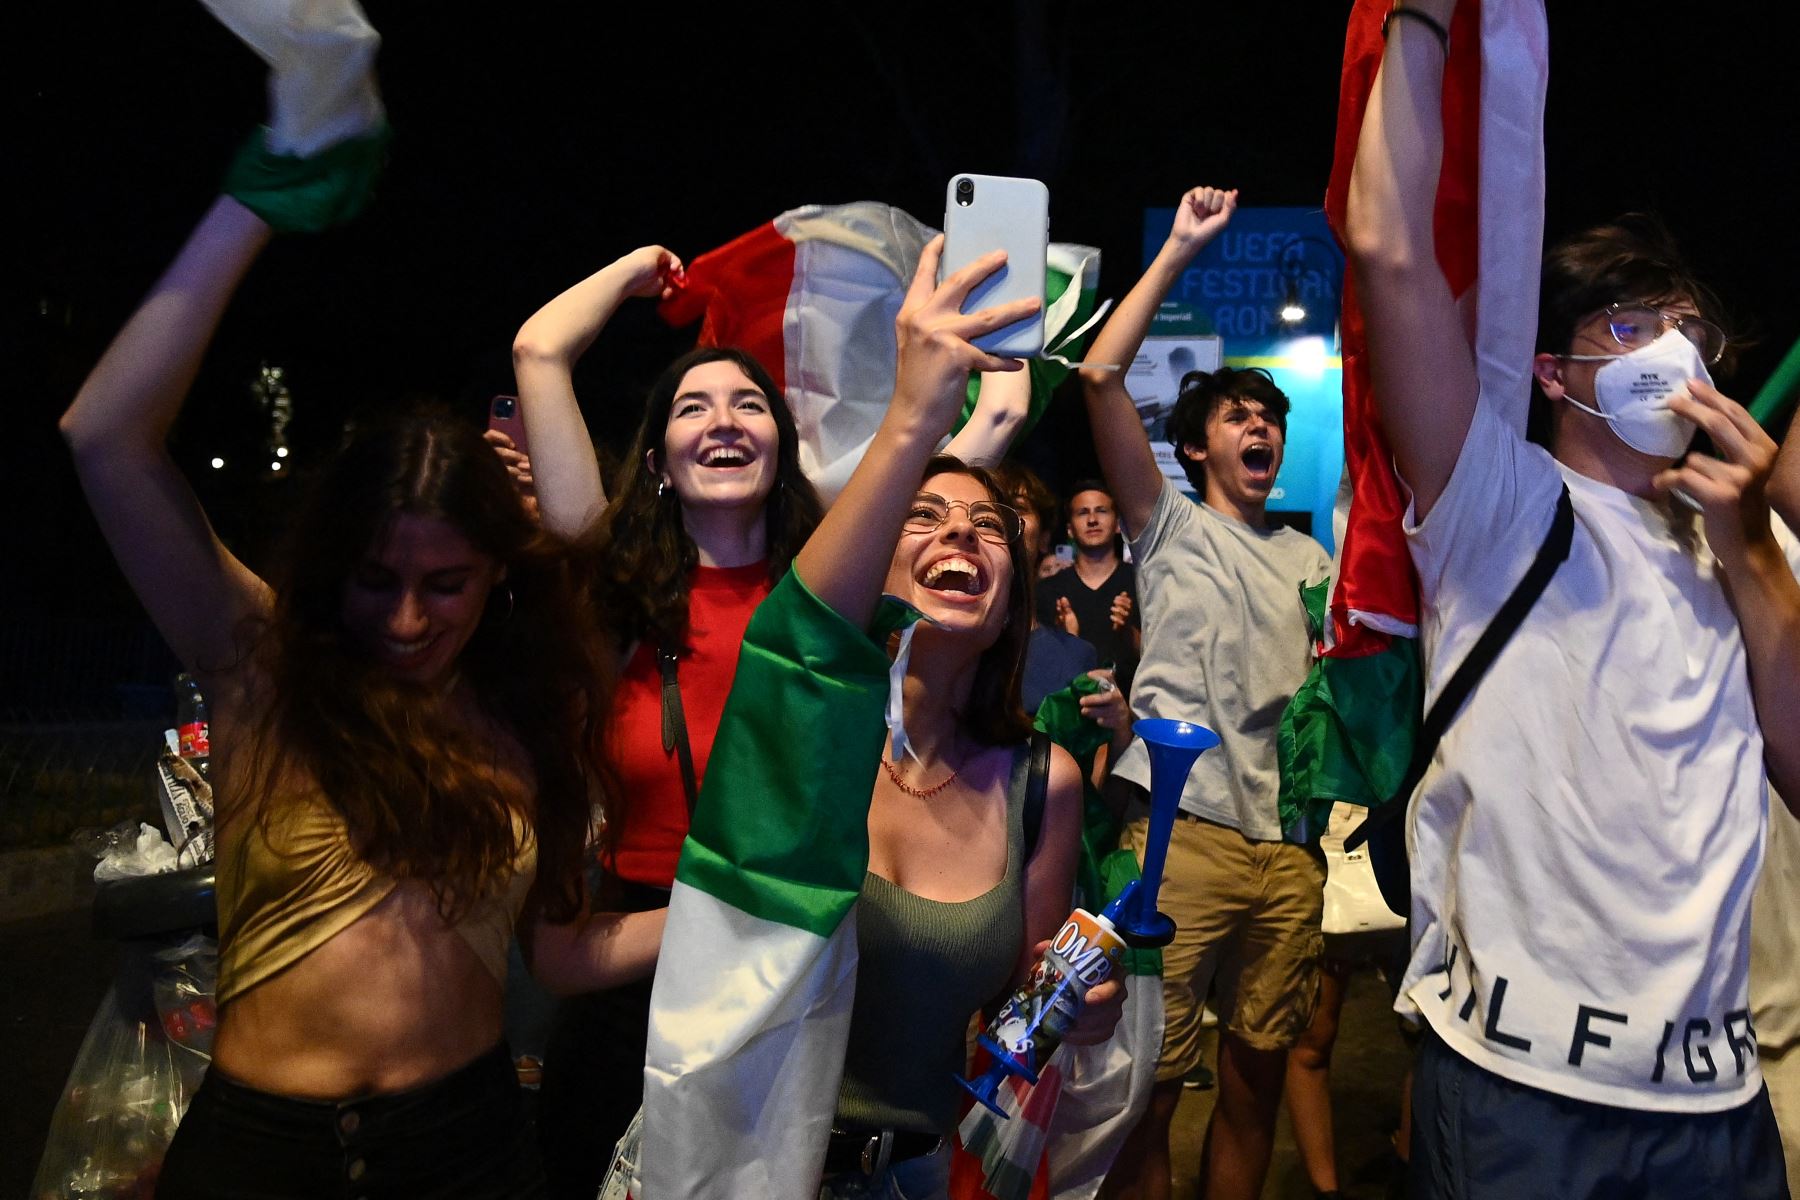 Los seguidores de la selección italiana de fútbol celebran después de que Italia venciera a Inglaterra por 3-2 en la tanda de penaltis para ganar el partido de fútbol final de la UEFA EURO 2020, en la fanzone Fori Imperiali, en Roma el 11 de julio de 2021. Foto: AFP